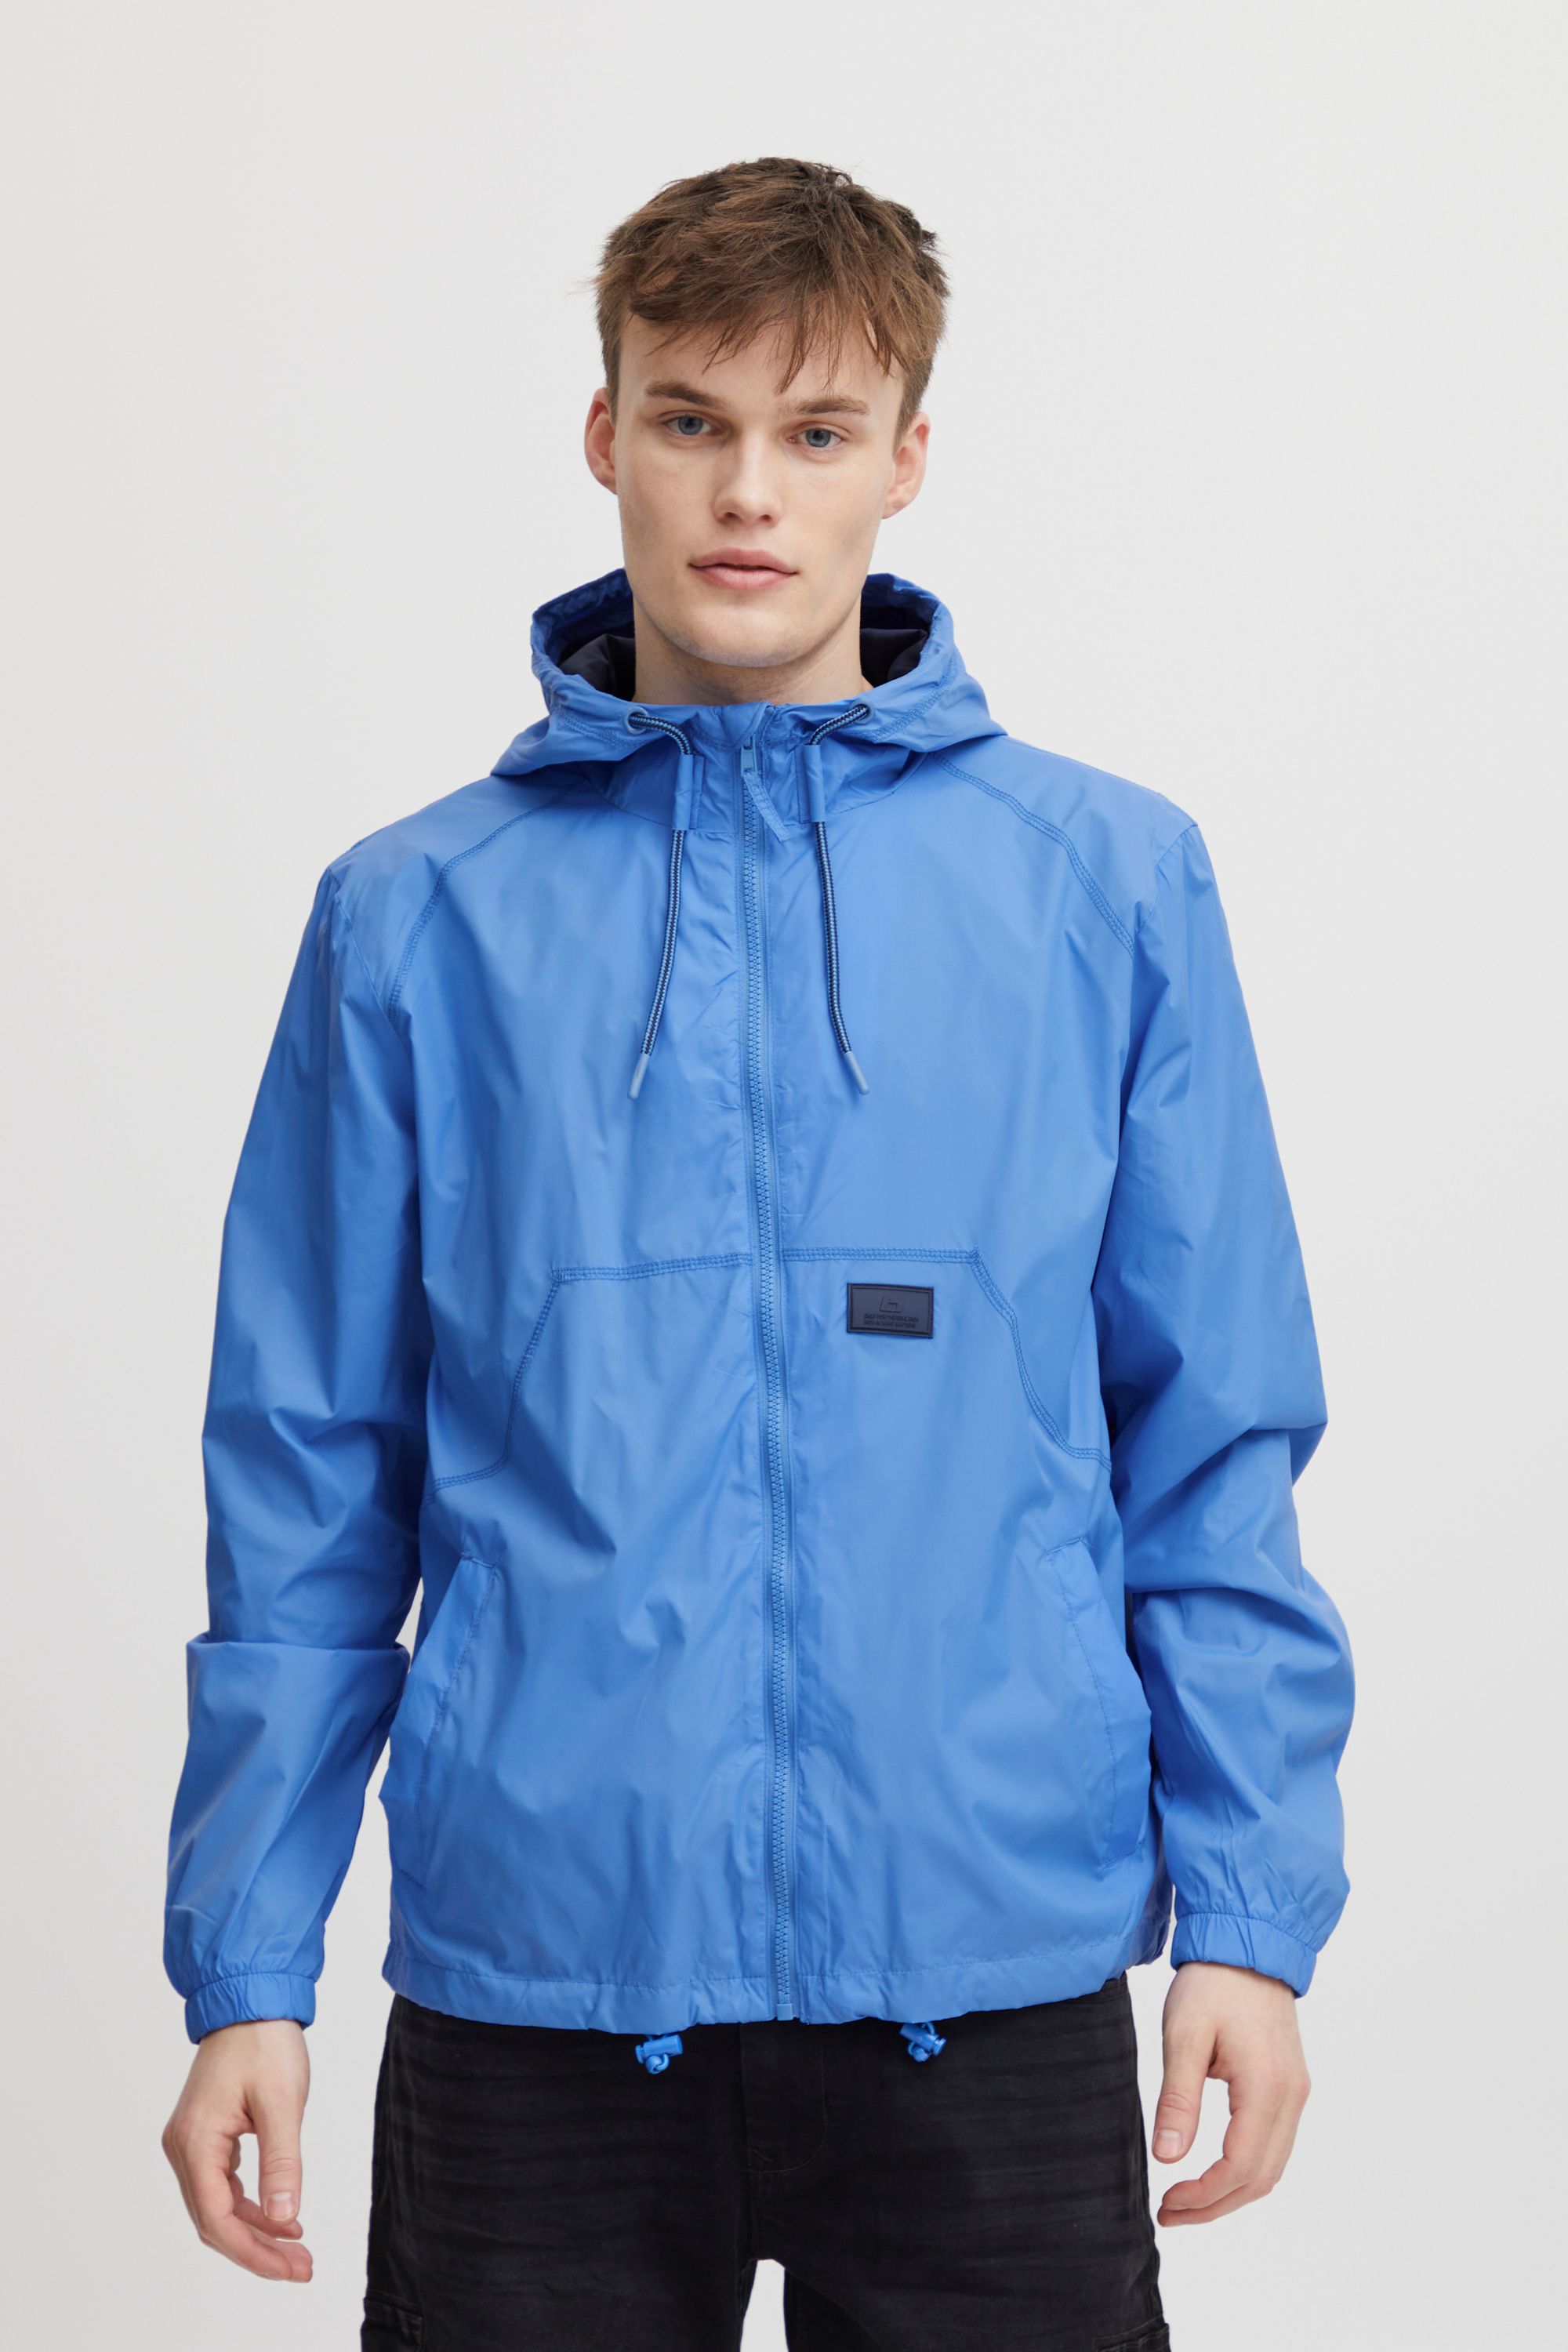 Куртка BLEND Regenjacke BHOuterwear 20715503, синий куртка blend kurzjacke bhouterwear 20715931 синий